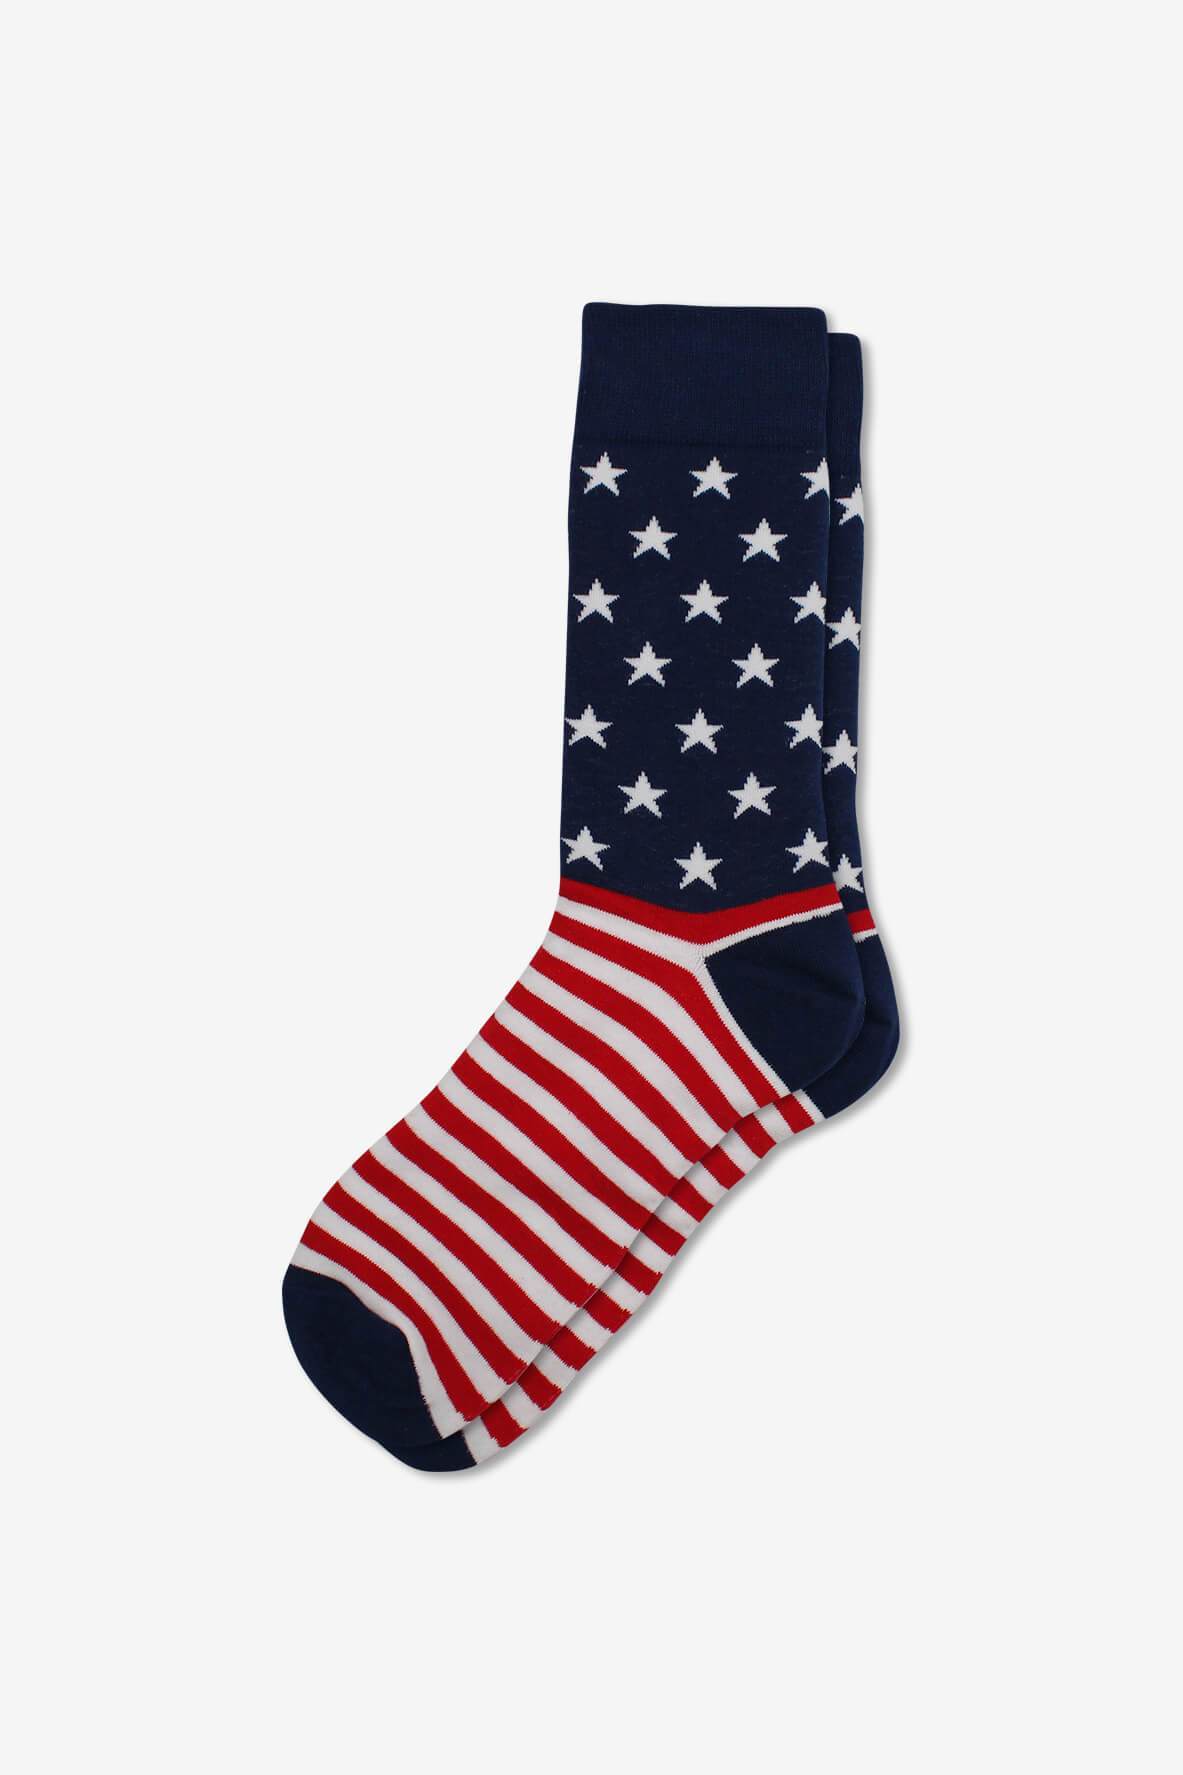 Socks IMG_5289, socks, GoTie